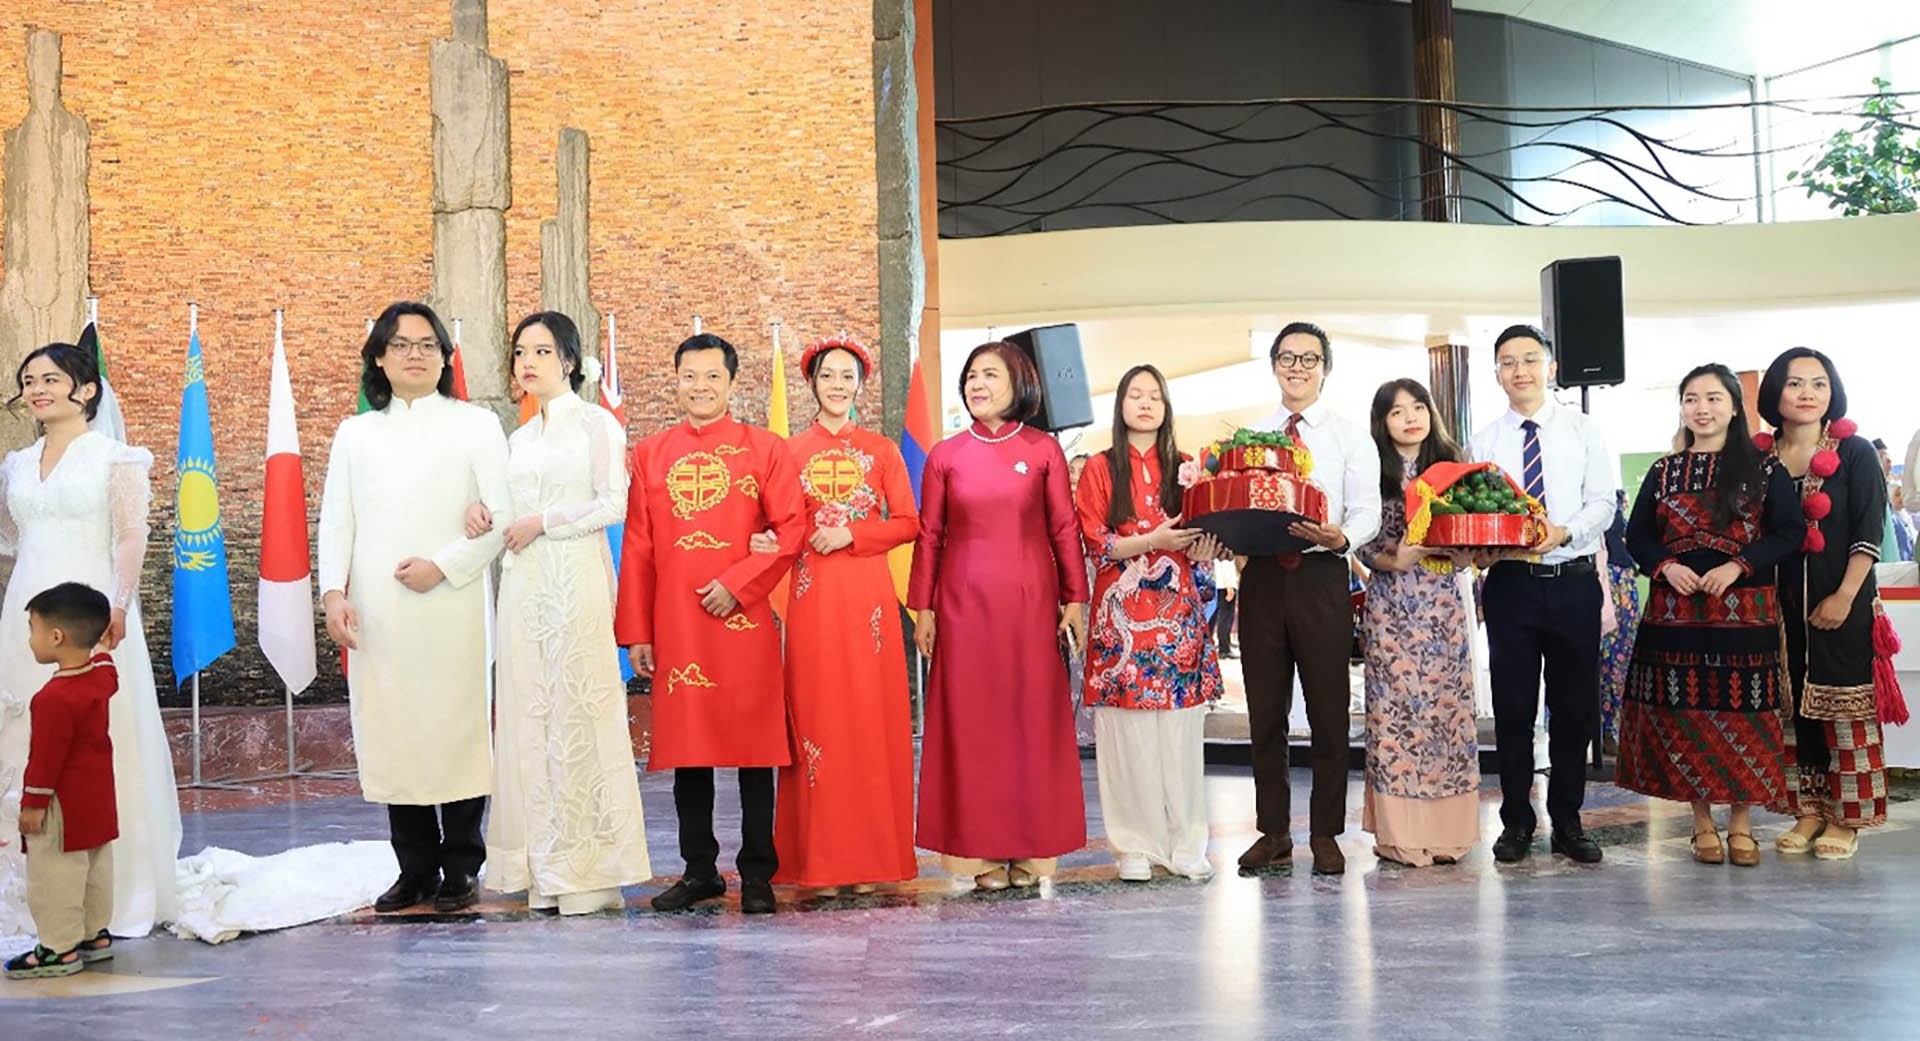 Đại sứ Lê Thị Tuyết Mai (thứ sáu từ trái sang phải) cùng cán bộ Phái đoàn tại Geneva giới thiệu một số trang phục đám cưới dân tộc Việt Nam tại Lễ hội Đám cưới châu Á, ngày 7/6. (Nguồn : TTXVN)